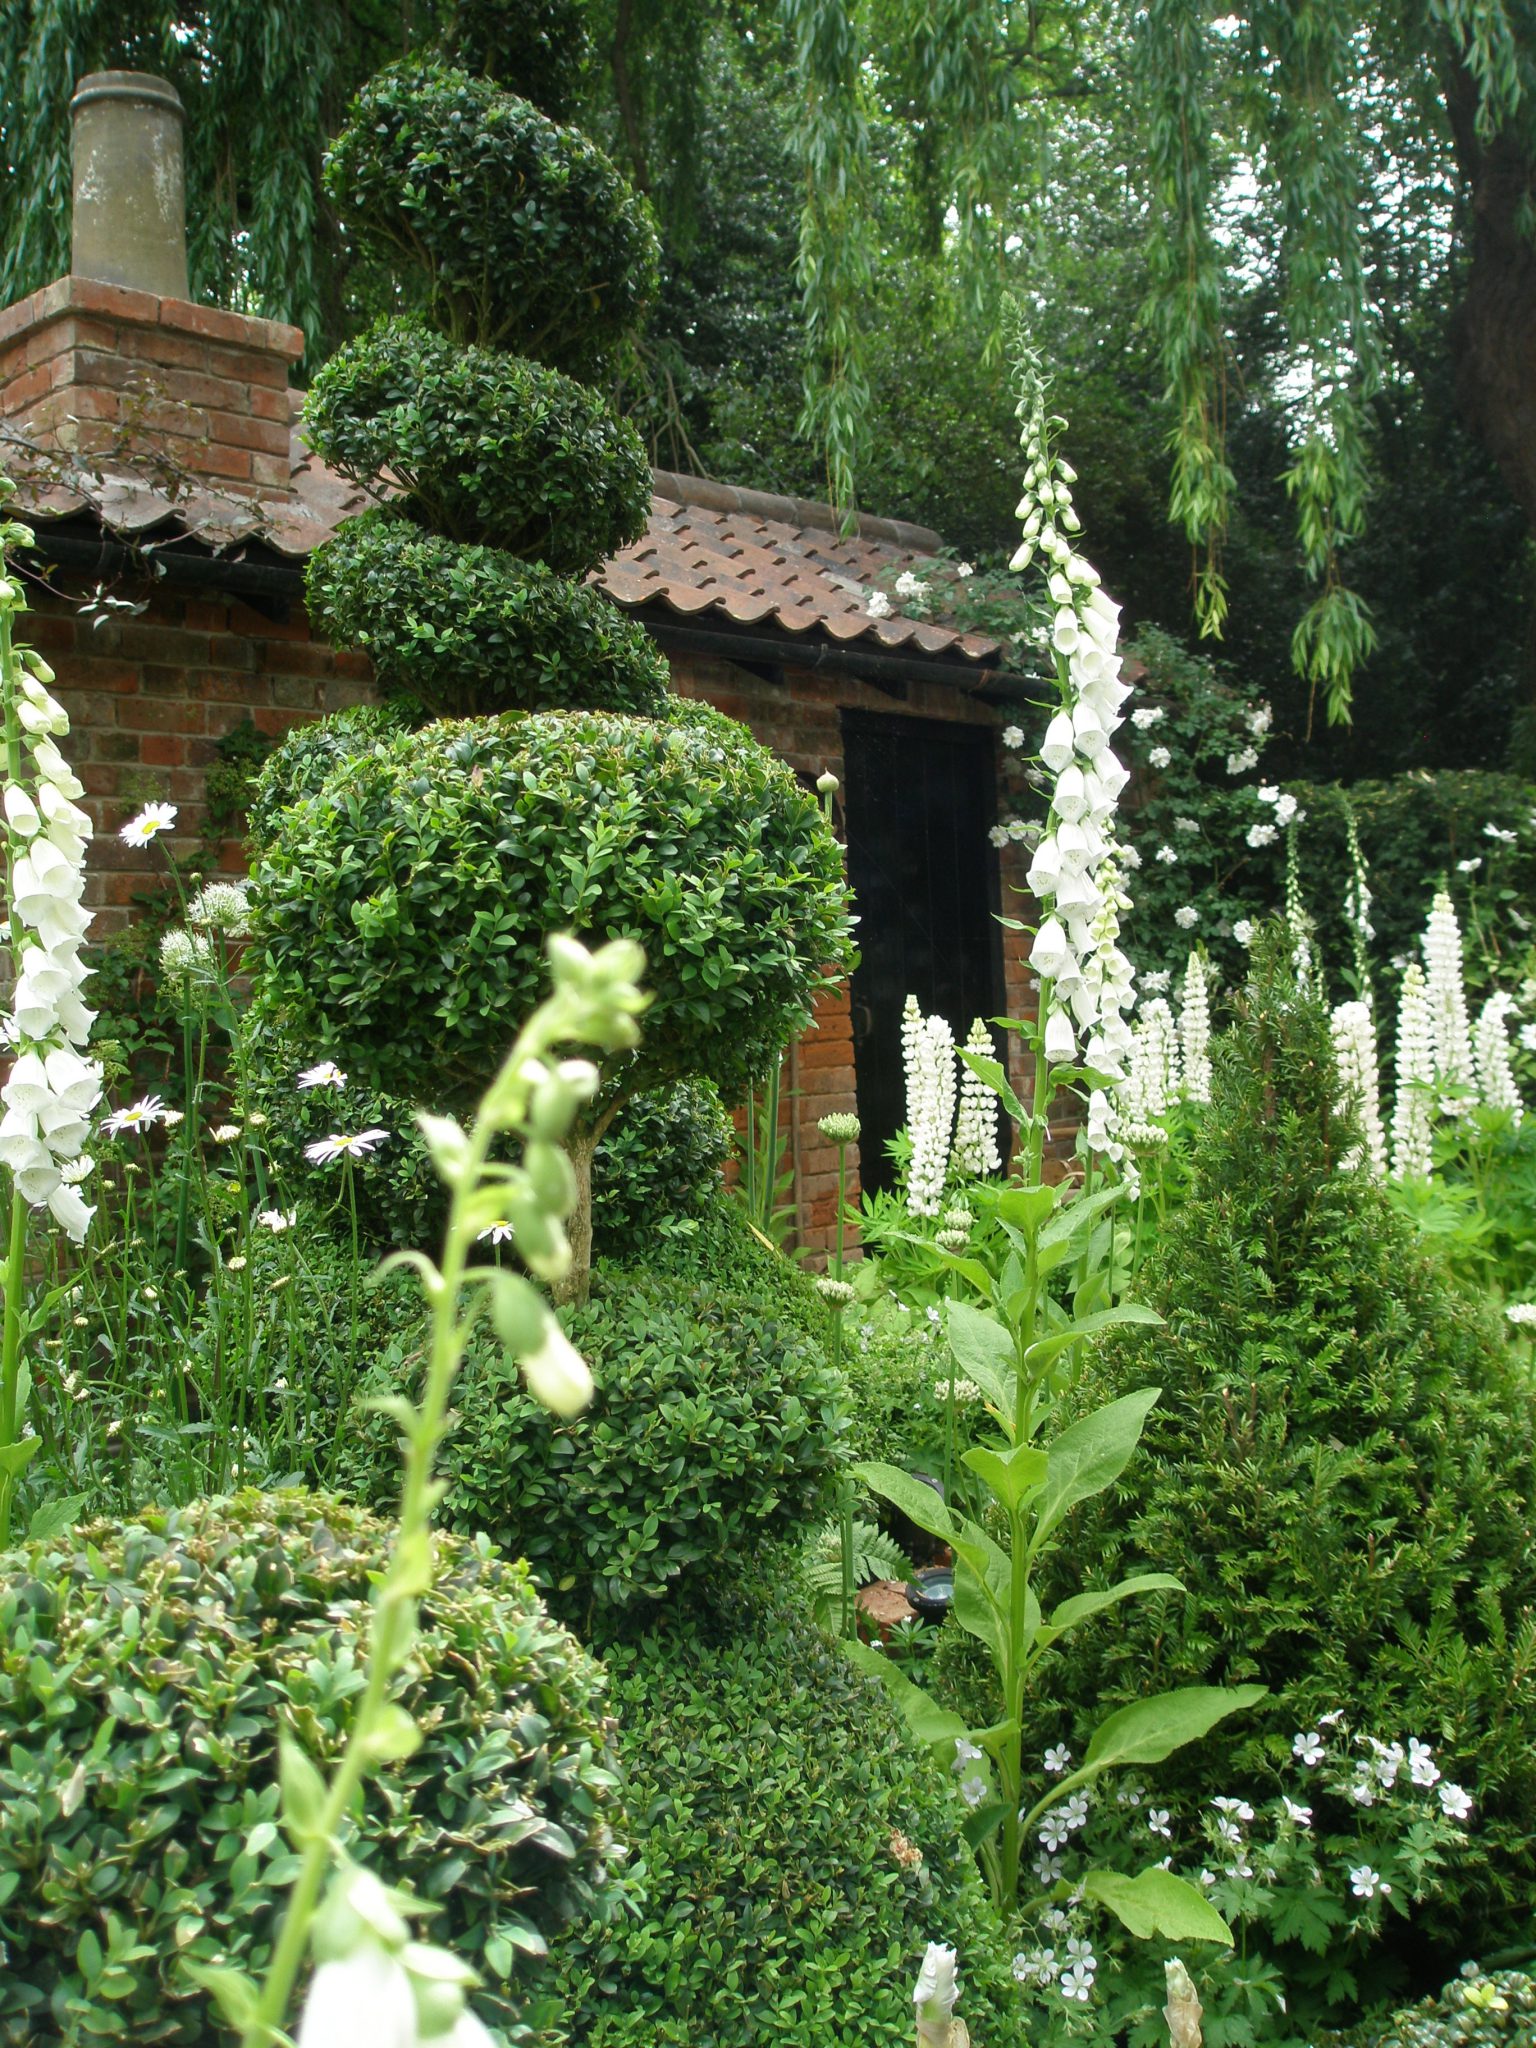 The Topiarist Garden